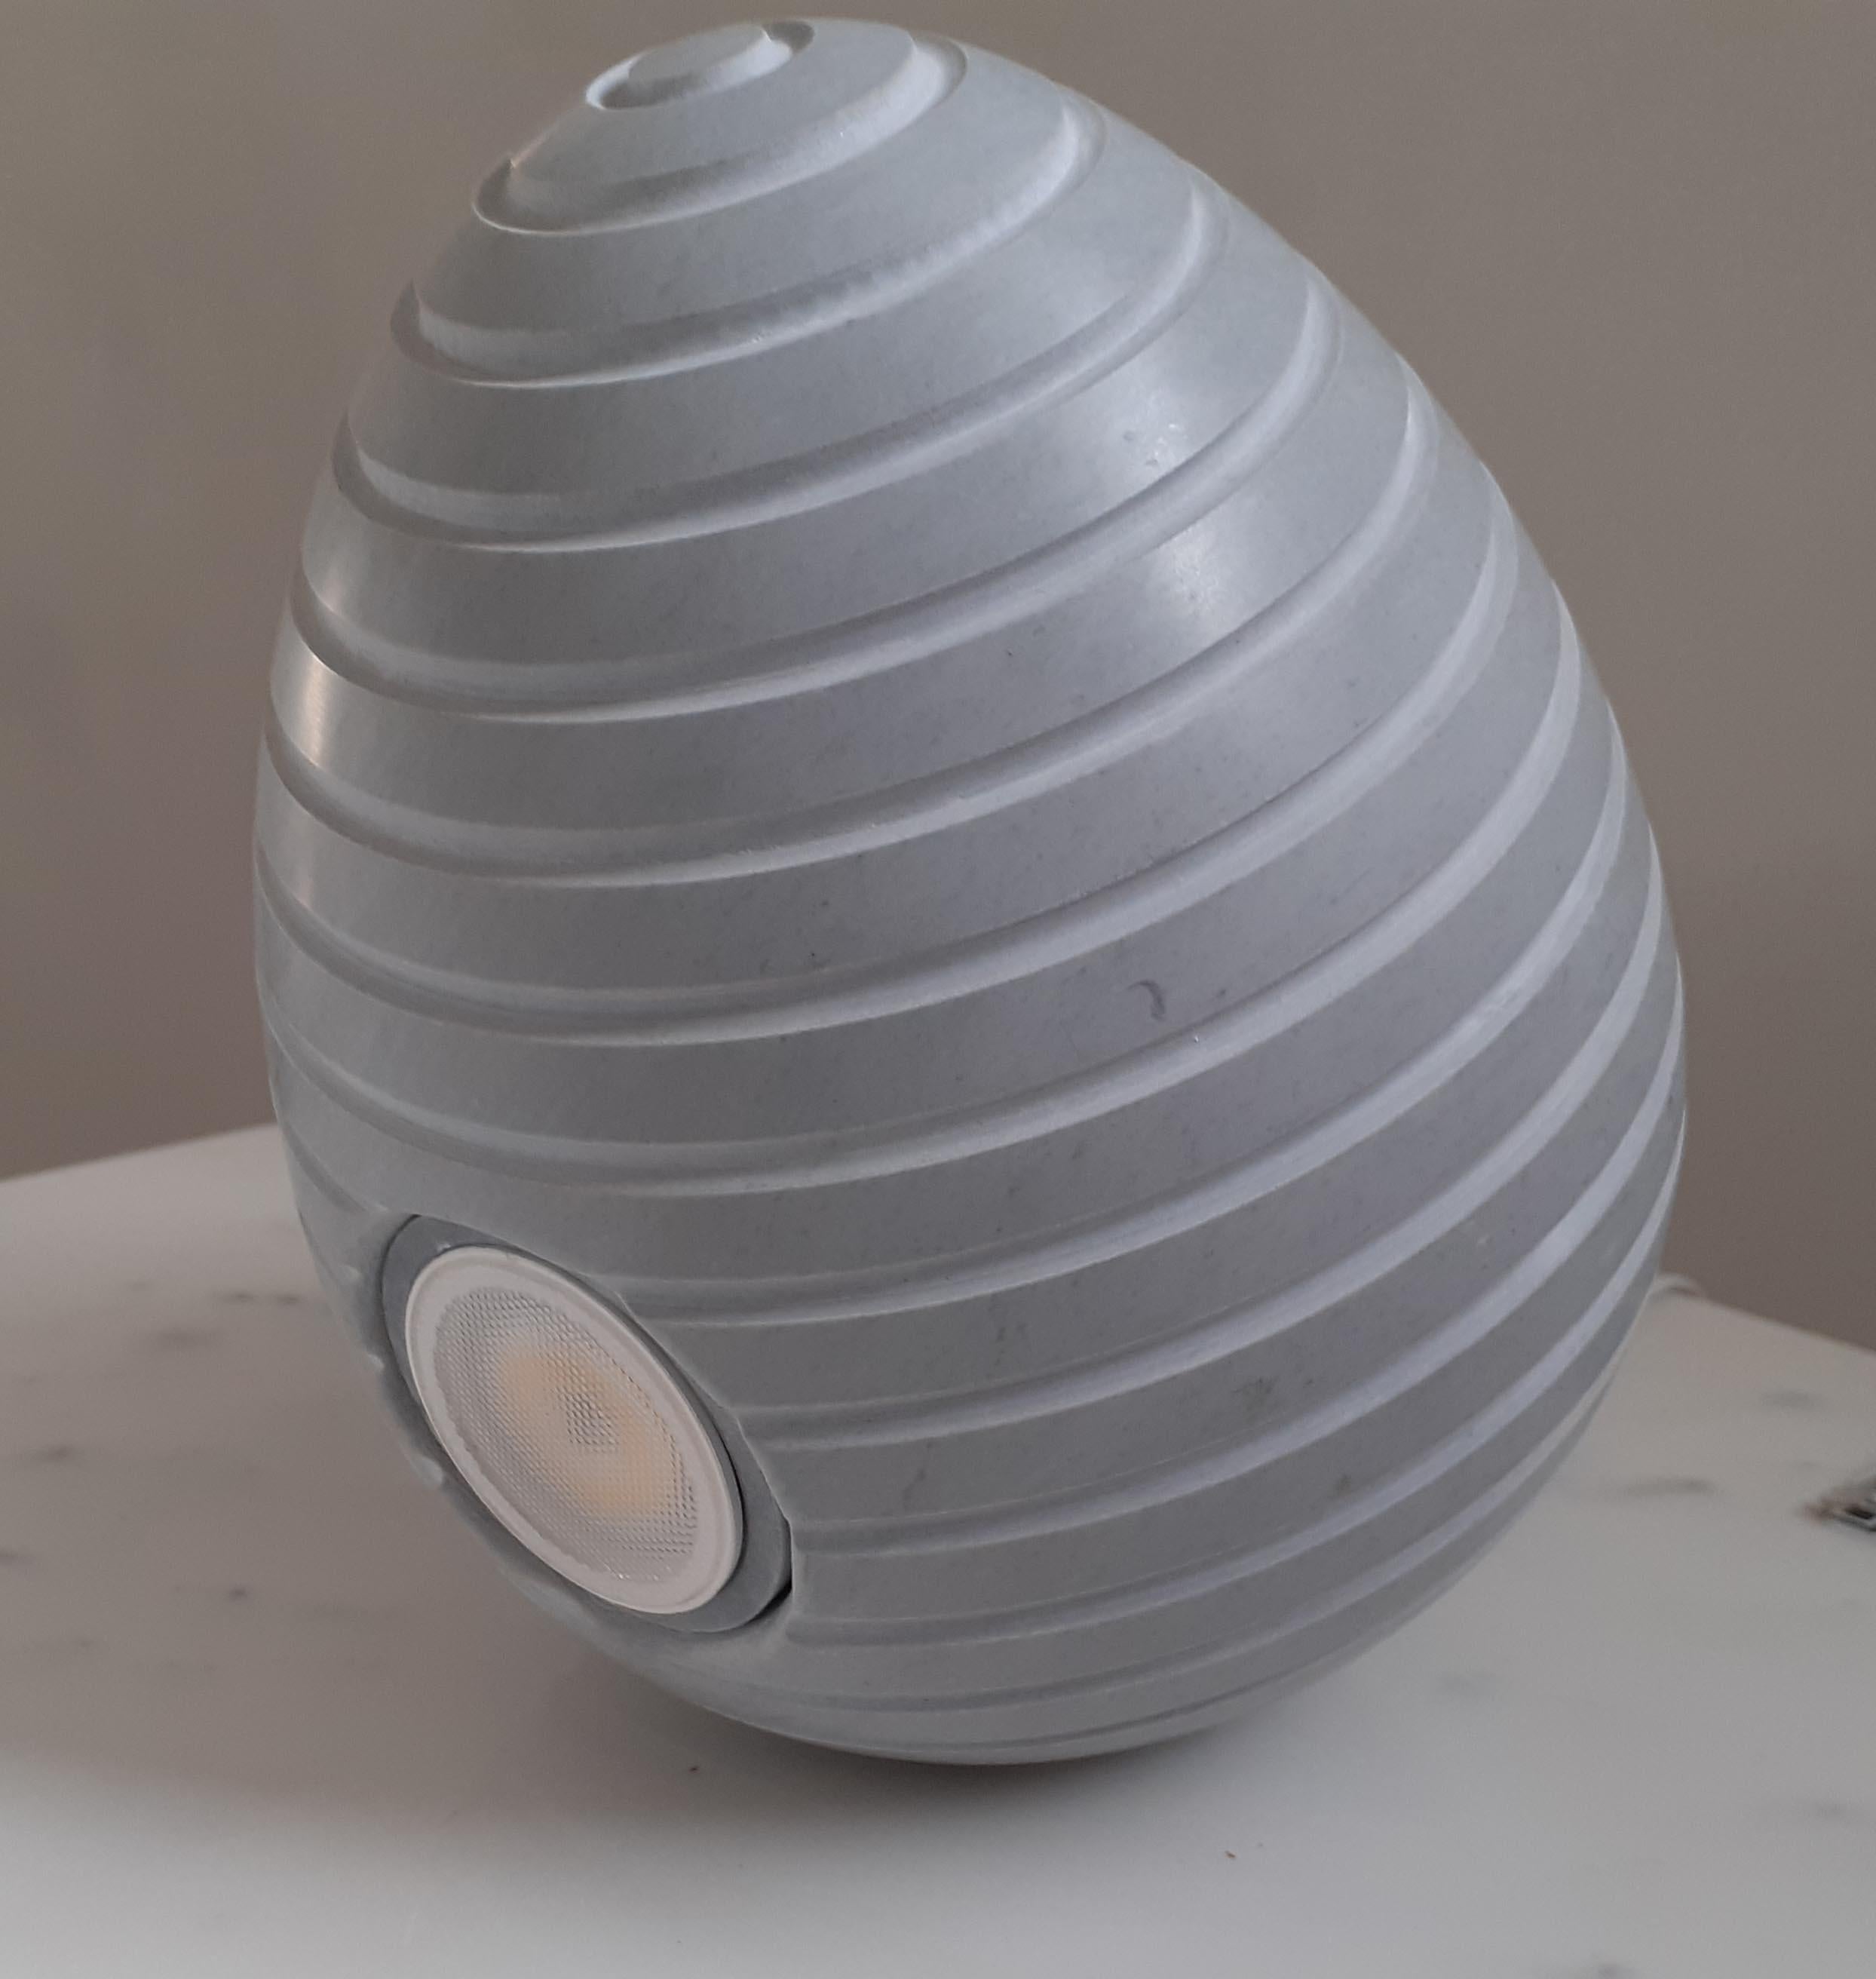 Marble lamp designed by Arch. Michele de Lucchi & Philippe Nigro
Materials: Bardiglio Perla, Statuario Up
Size: Diameter 16 x 40 height Indoor model
Designed by: M. De Lucchi & P. Nigro.